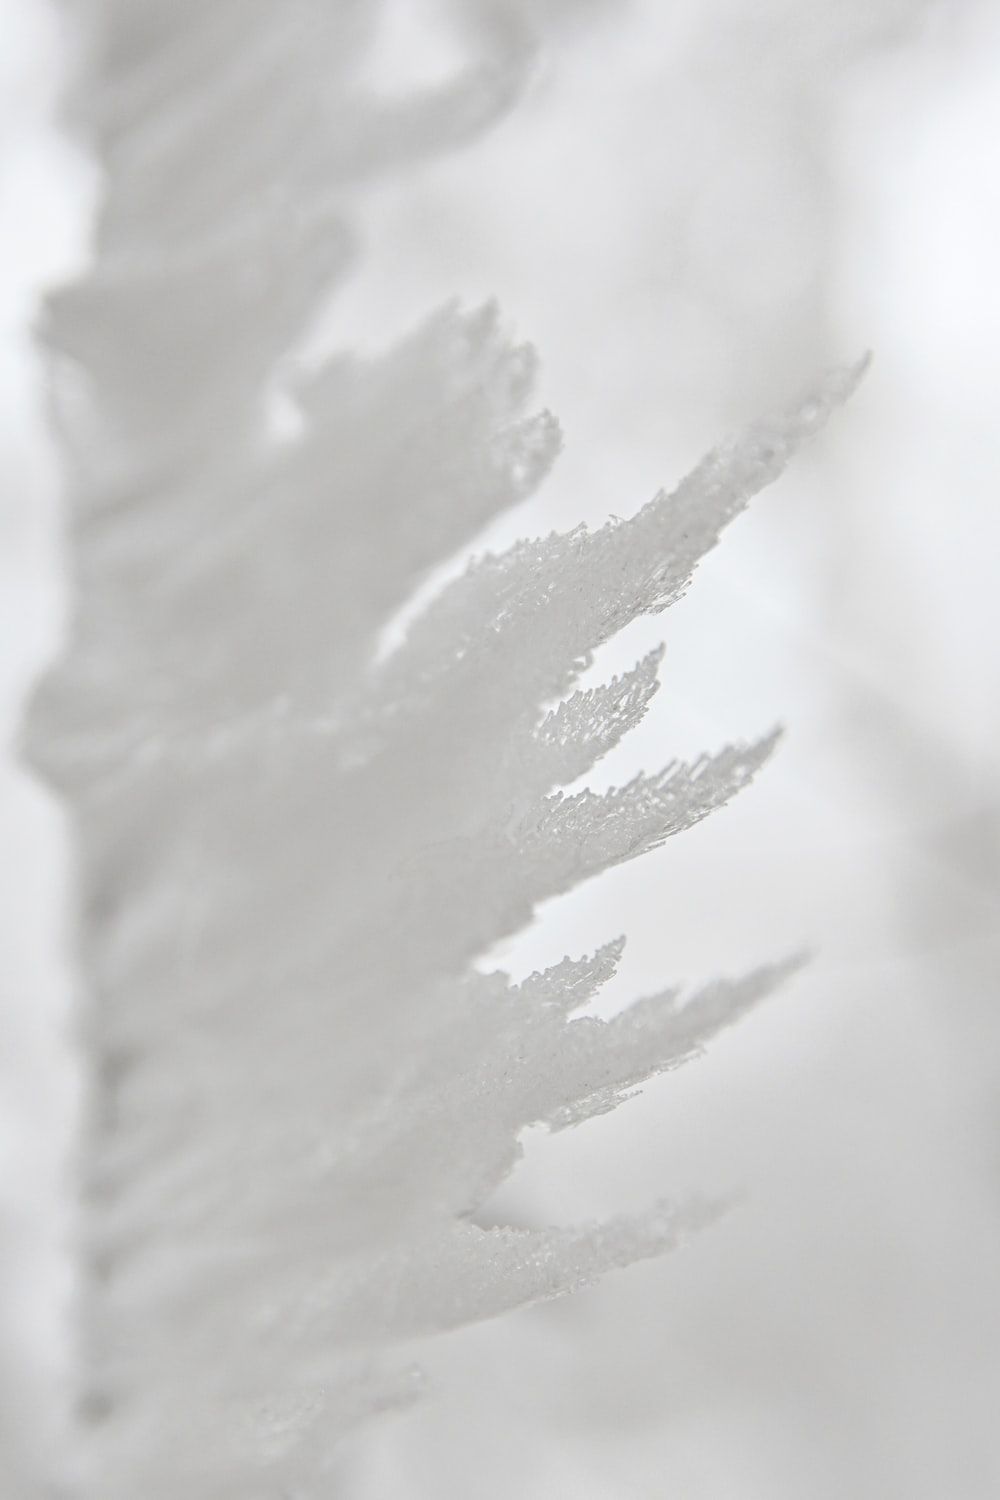 Tumblr Hintergrundbild 1000x1500. Foto zum Thema weißer Schnee auf weißem Hintergrund